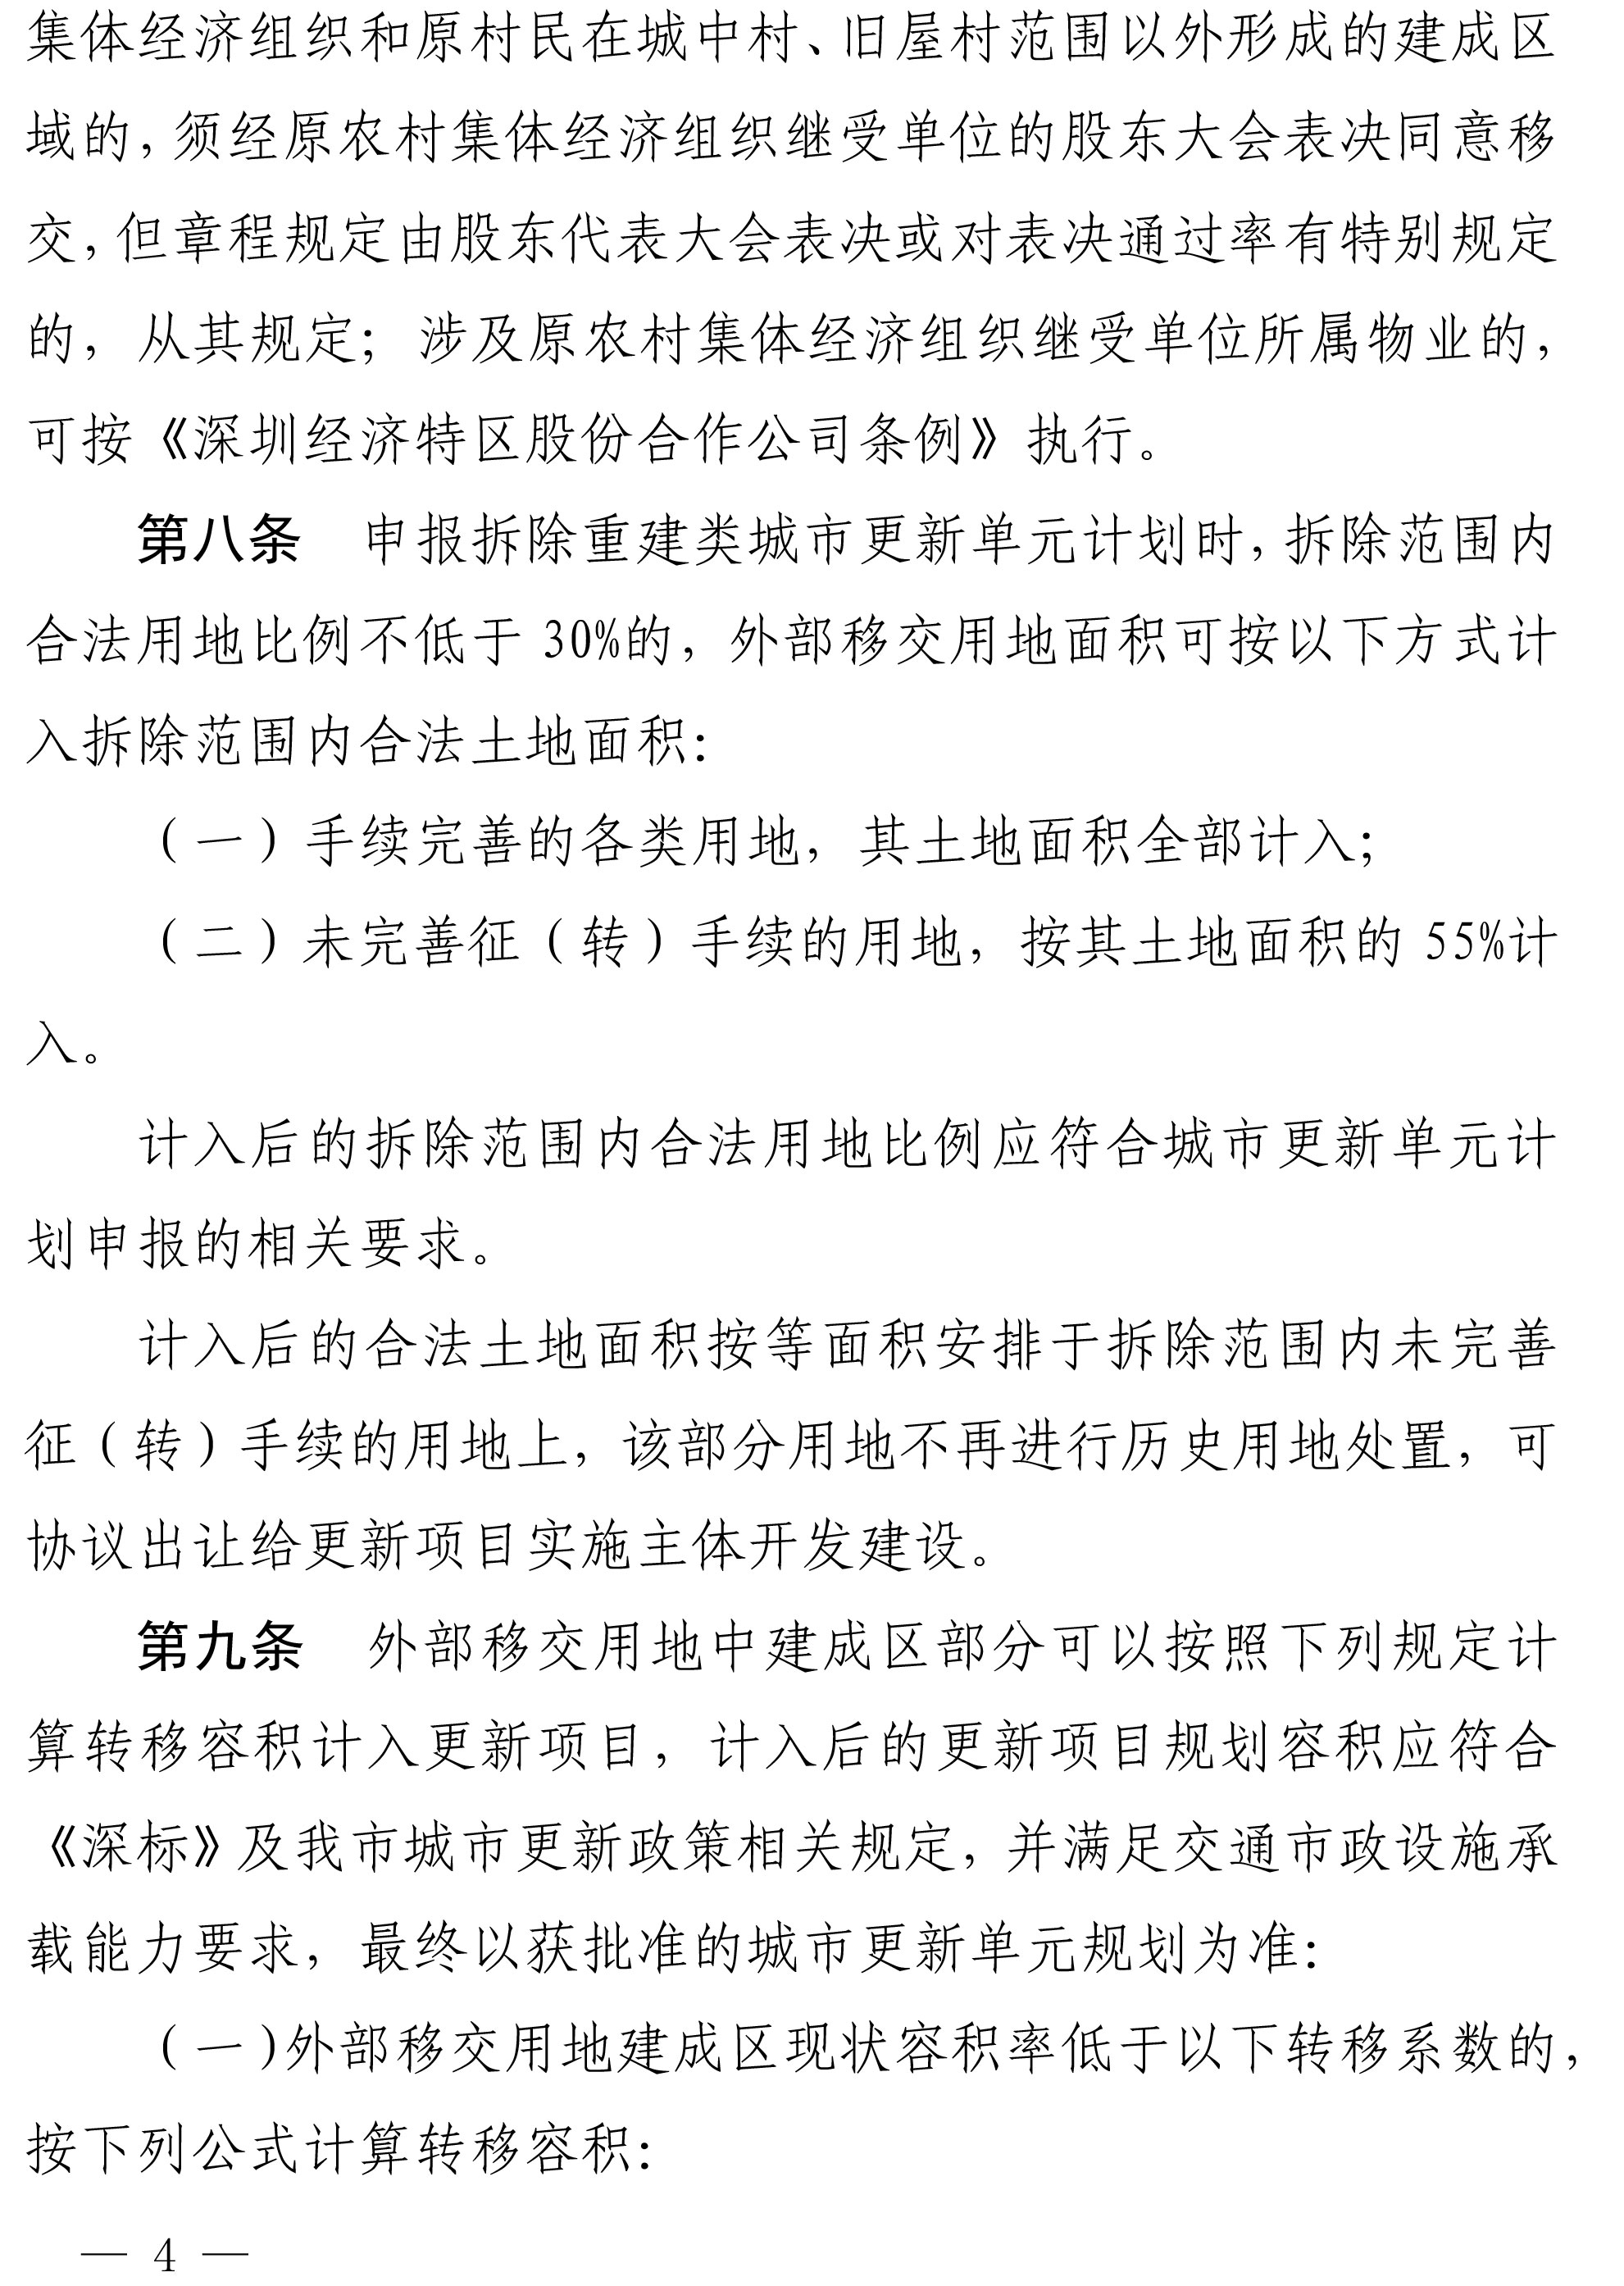 深圳市城市更新外部移交公共设施用地实施管理规定-4.jpg